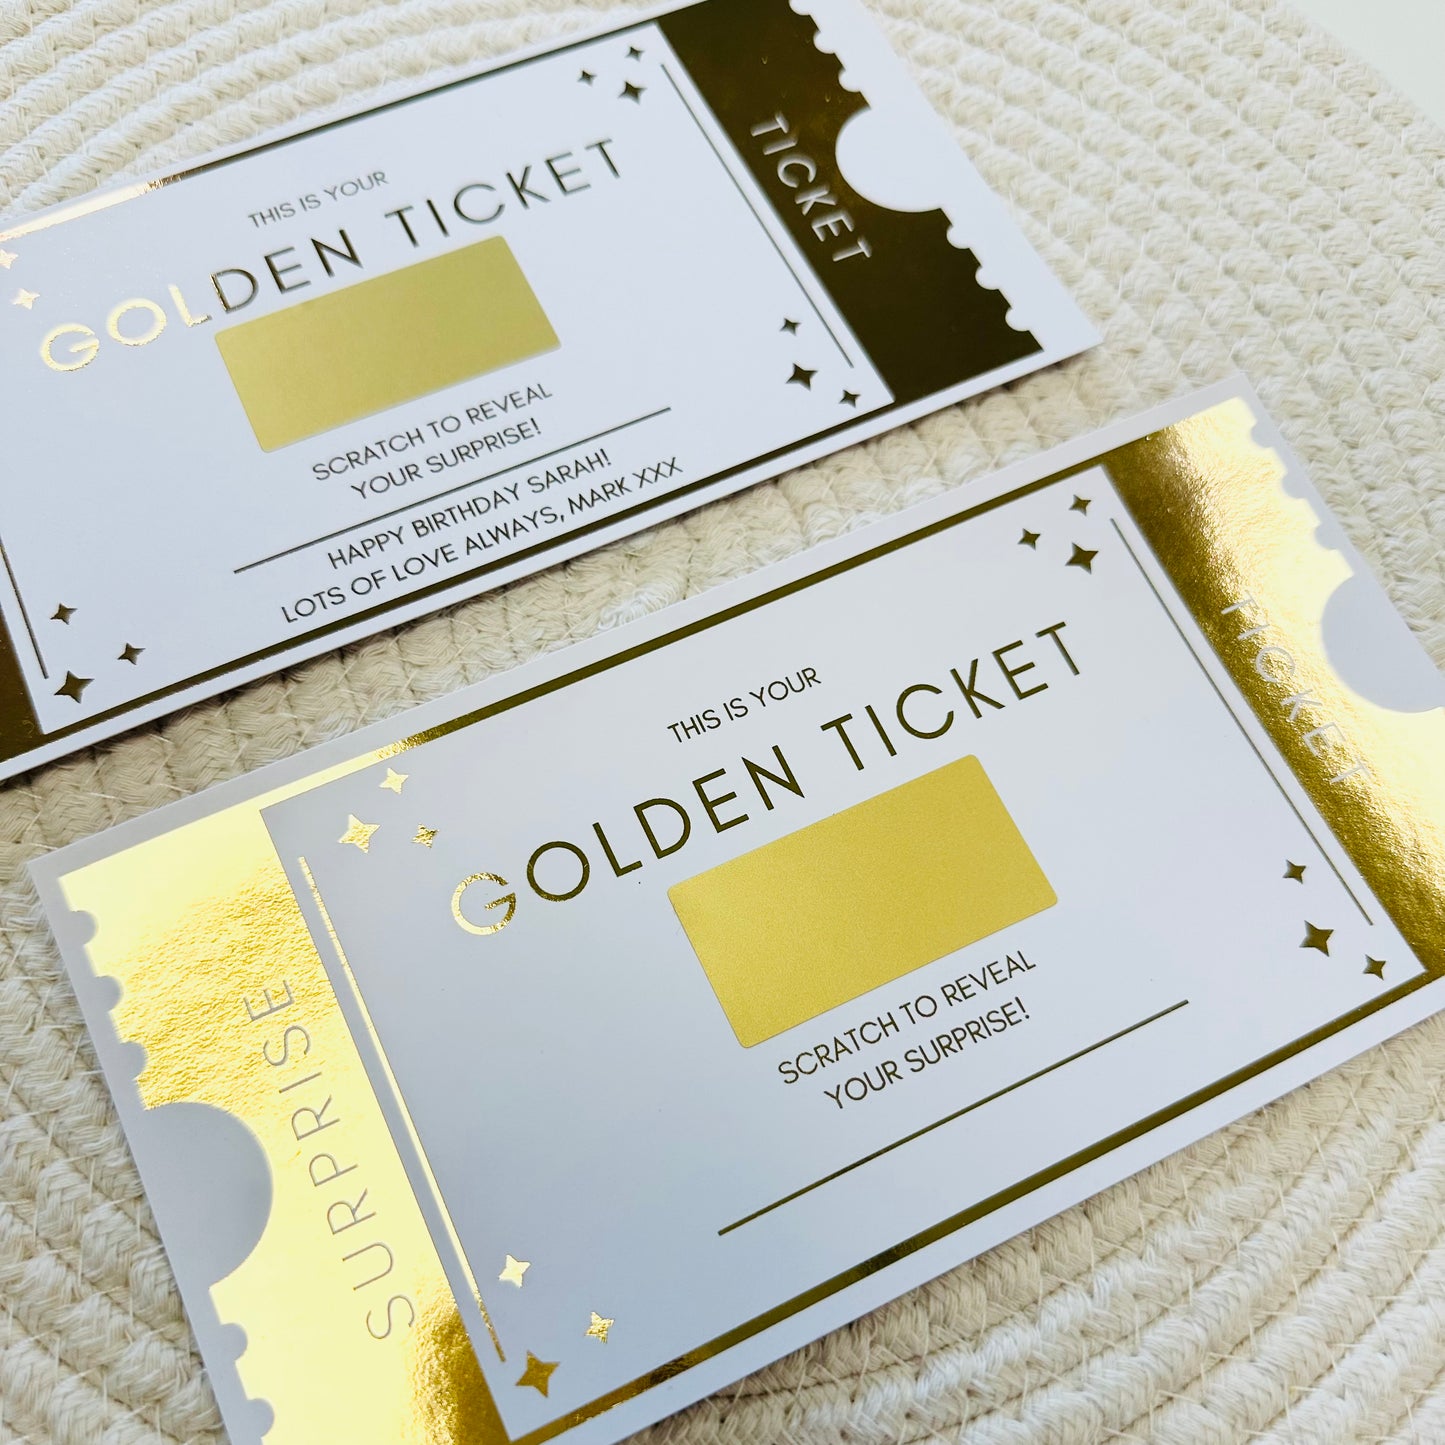 Golden Ticket Scratch Reveal Voucher